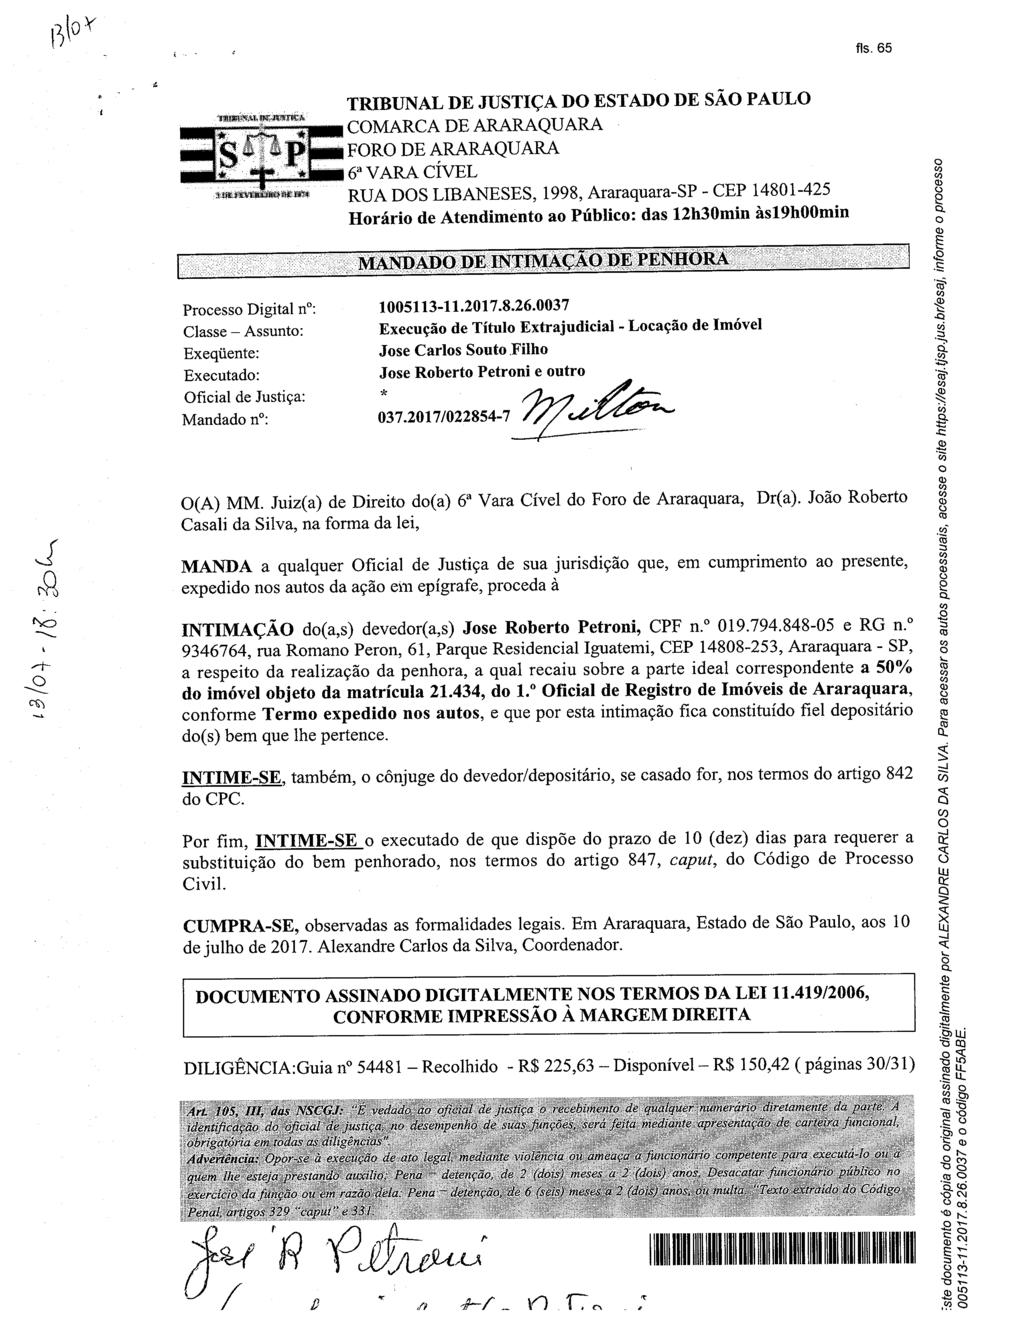 fls. 69 Este documento é cópia do original, assinado digitalmente por SUZETE PLANAS RIBEIRO, liberado nos autos em 17/07/2017 às 11:11.